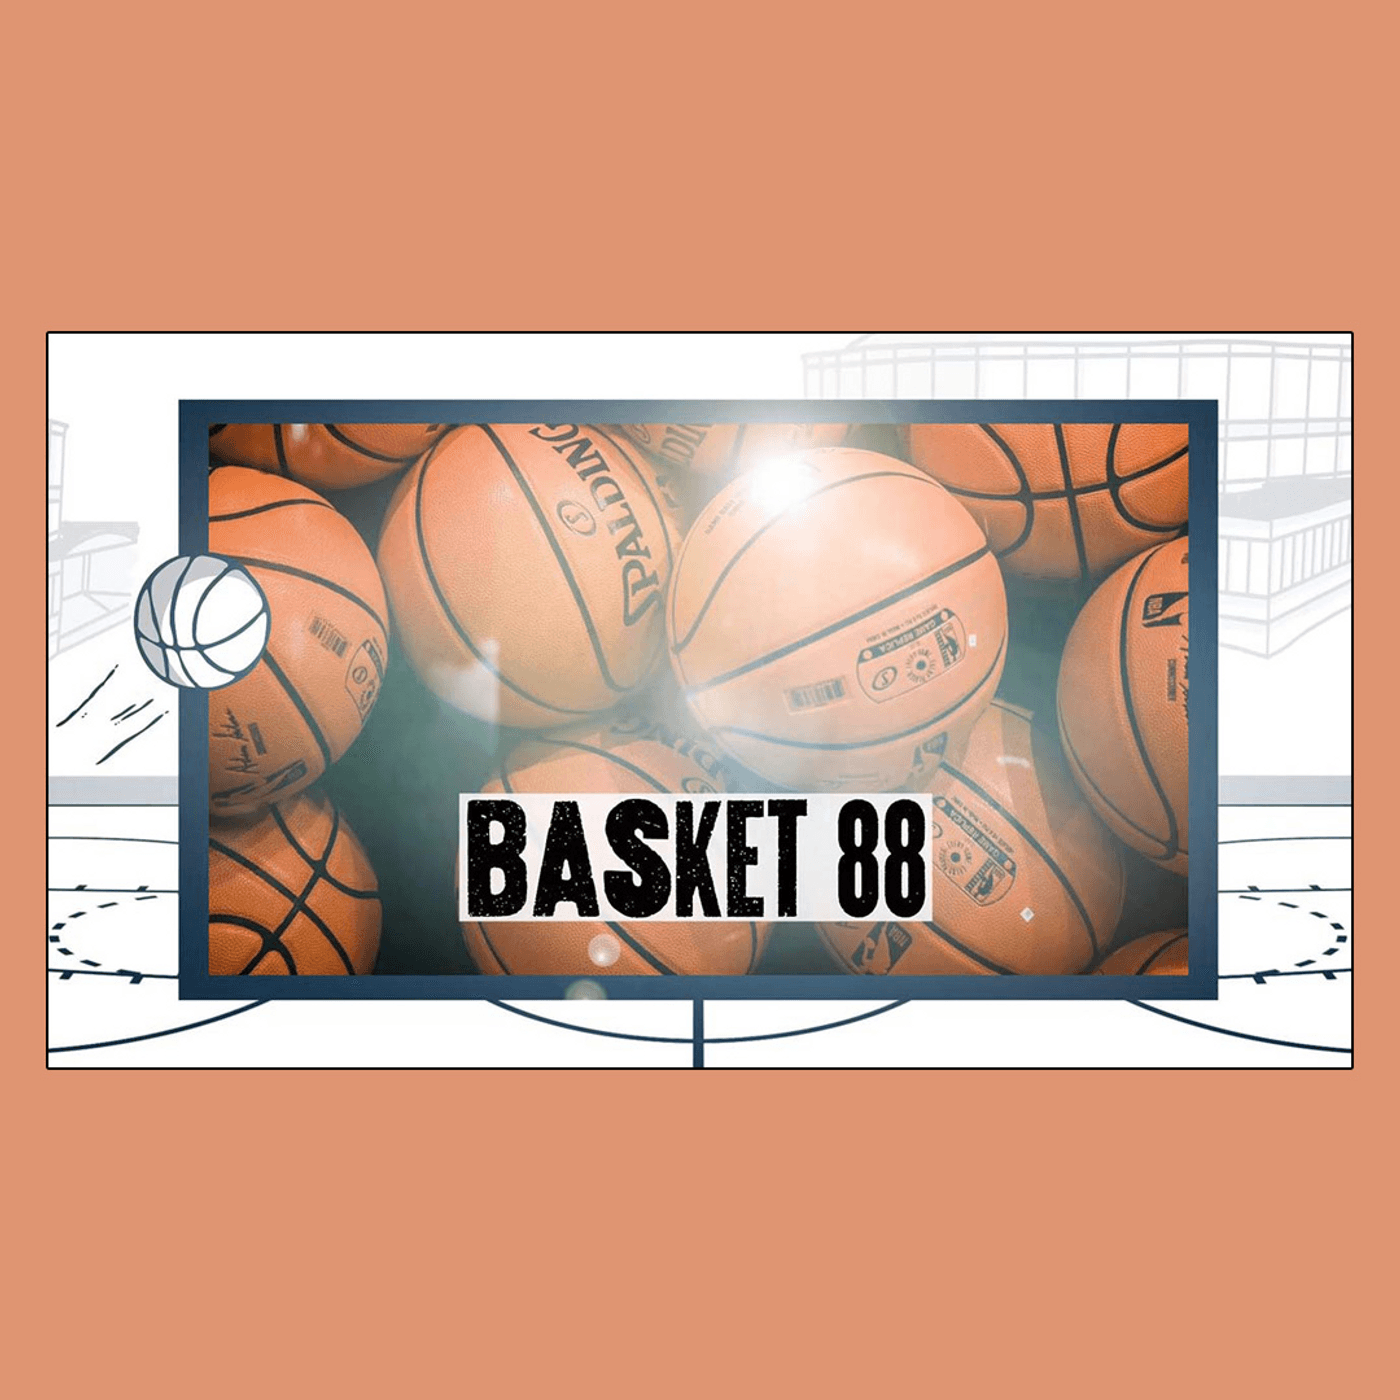 Basket 88